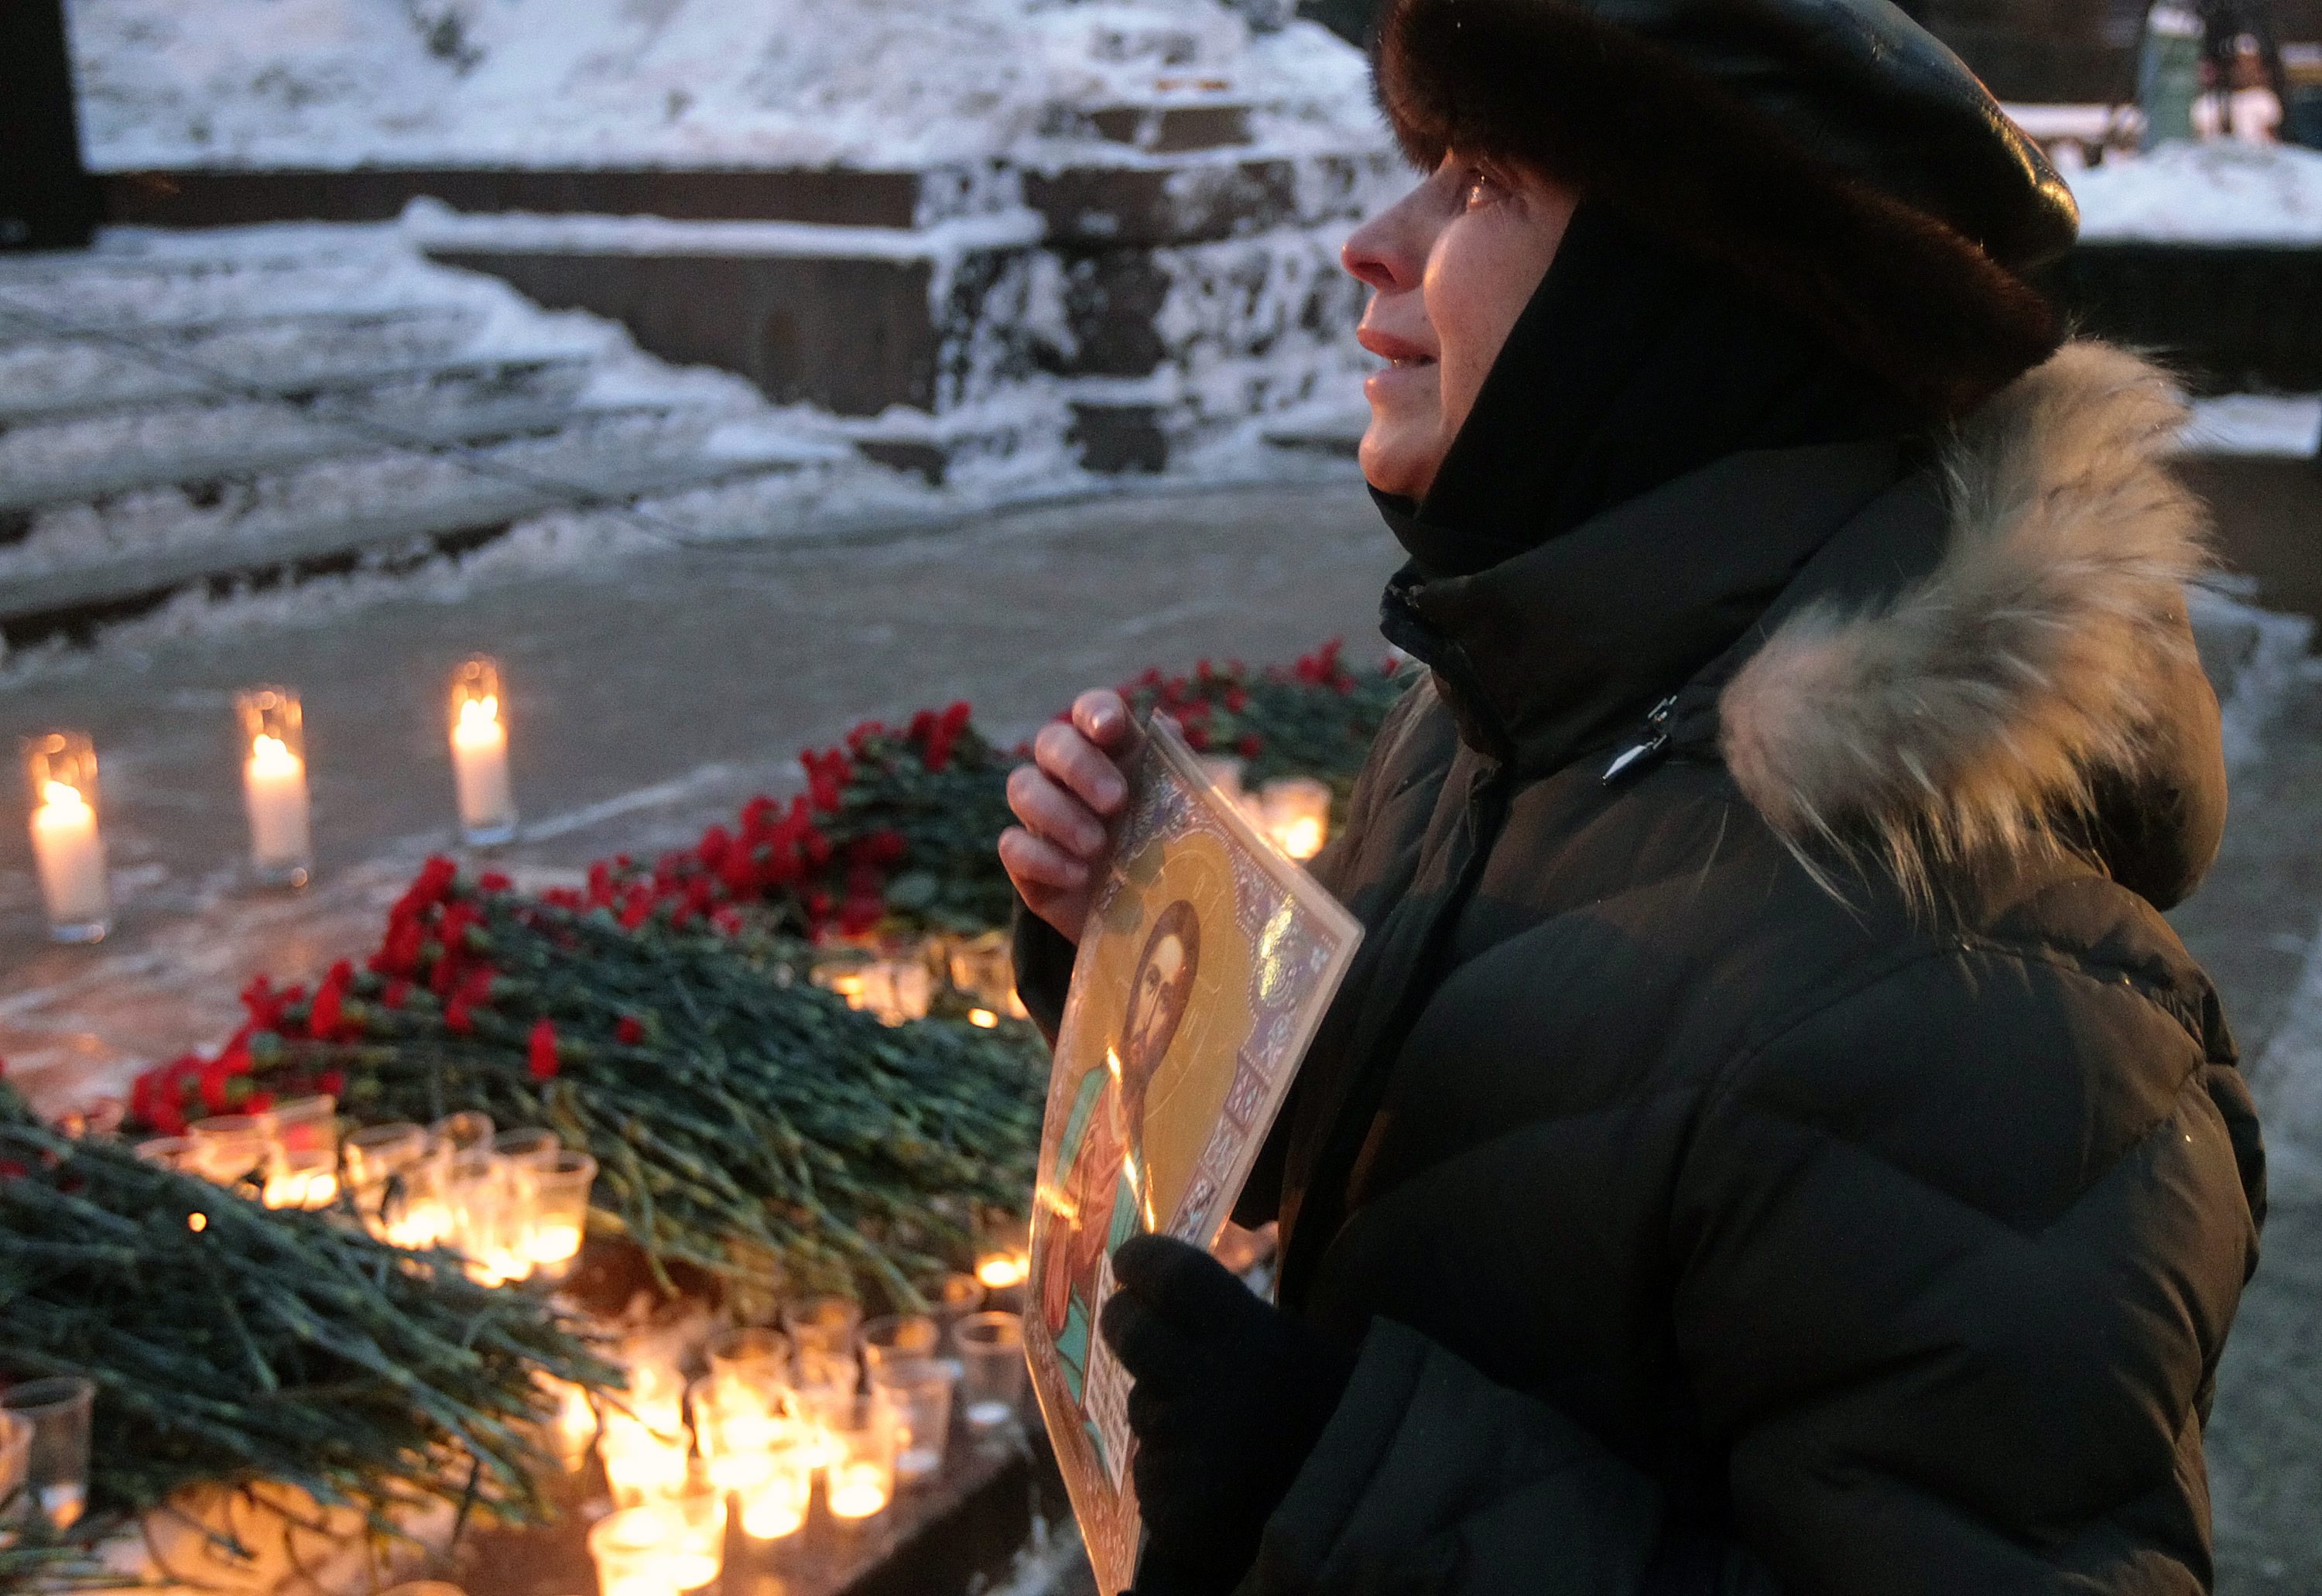 36 души загинаха при кървавия атентат на най-голямото московско летище